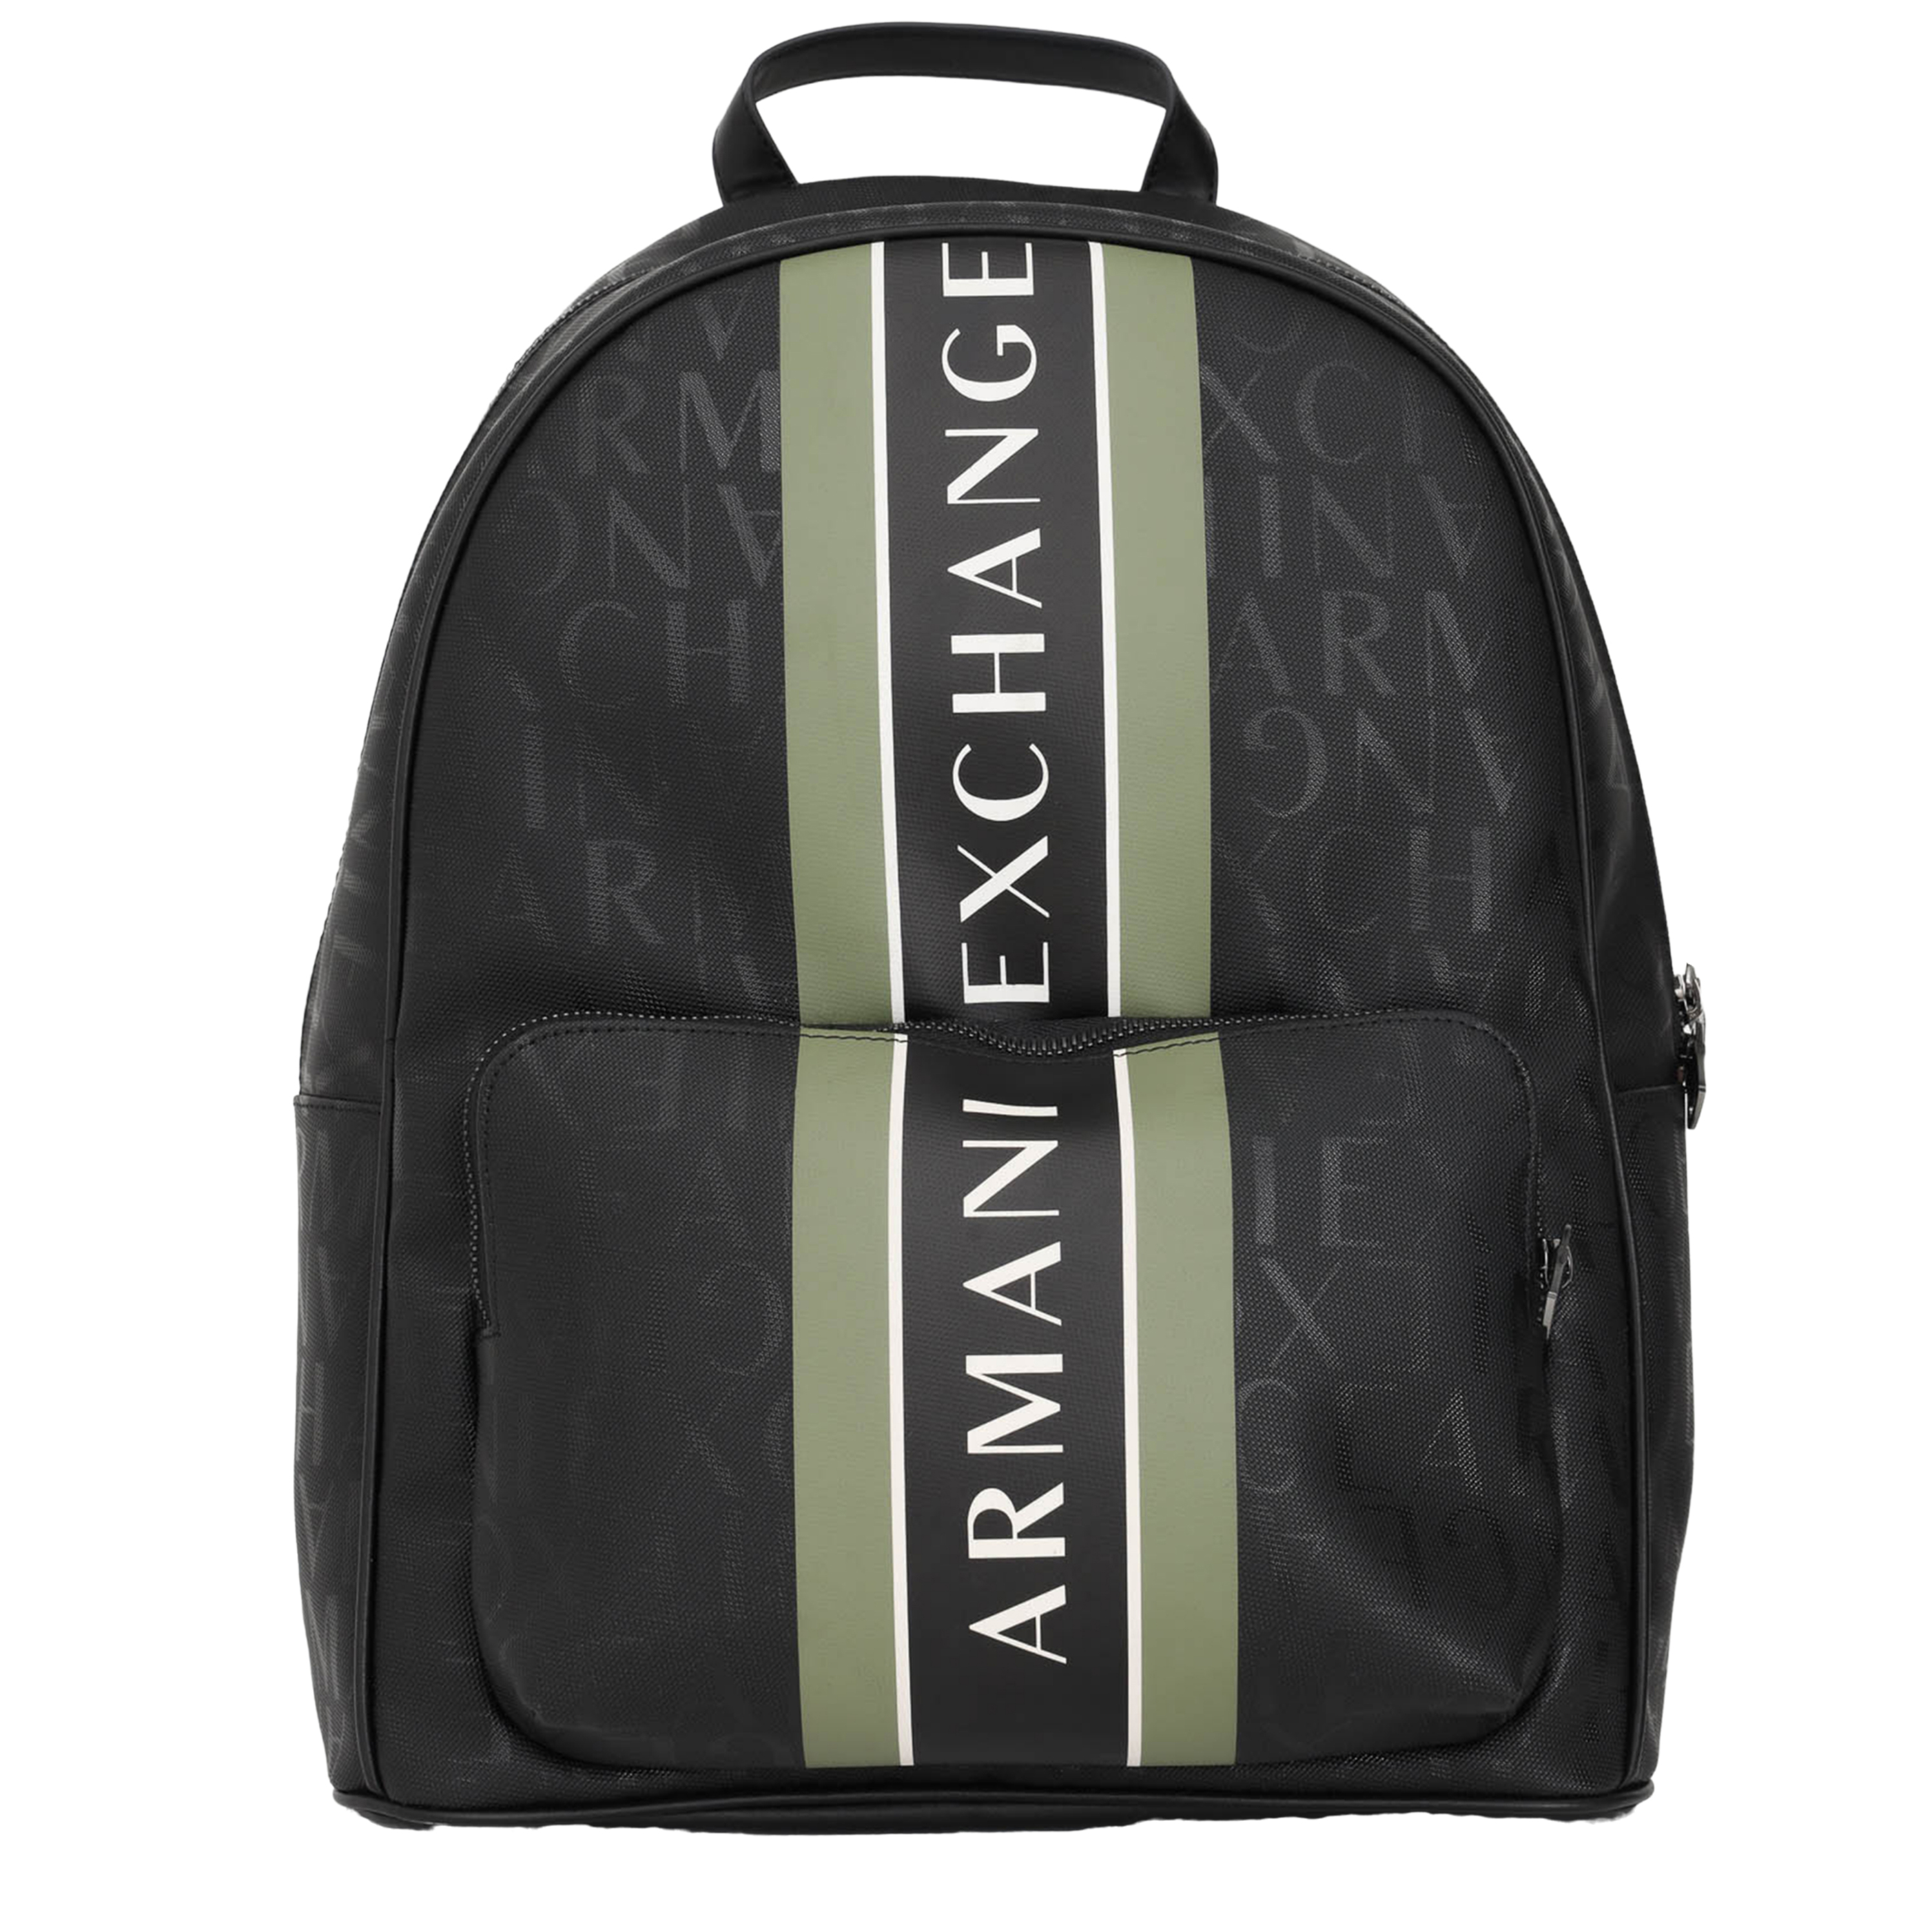 Armani Exchange A22u backpack man 952394 CC831 20721 | eBay